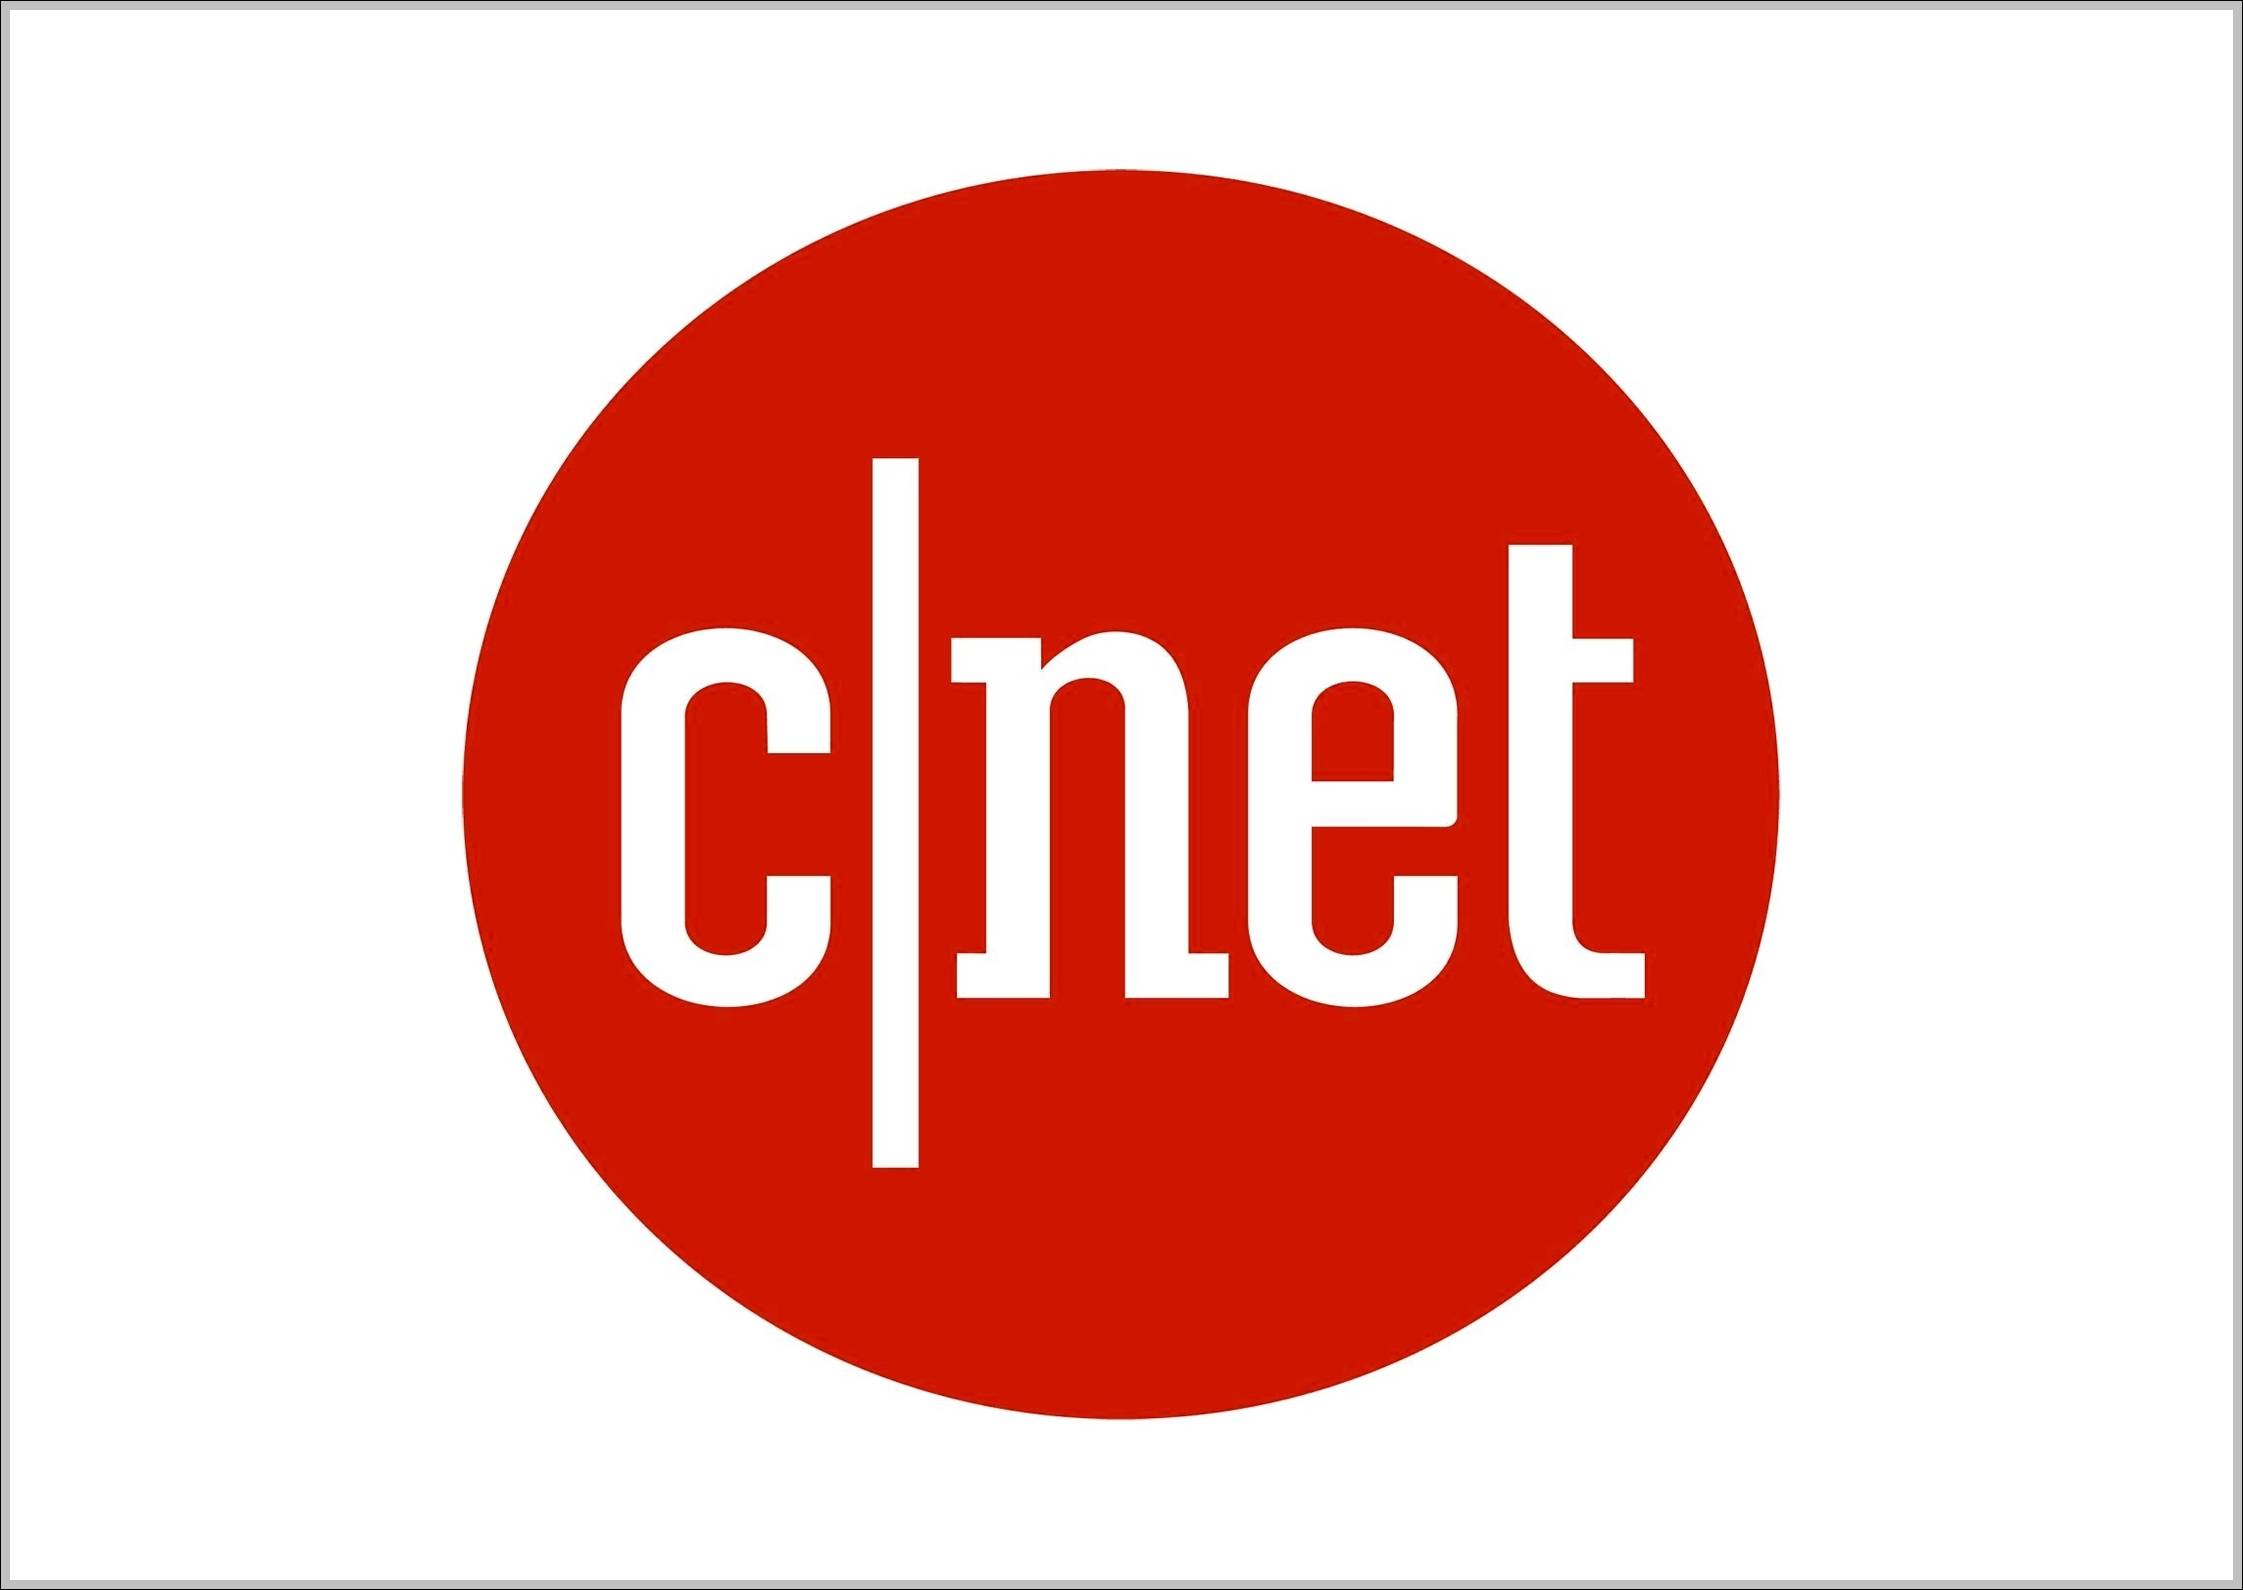 Cnet logo Pentagram